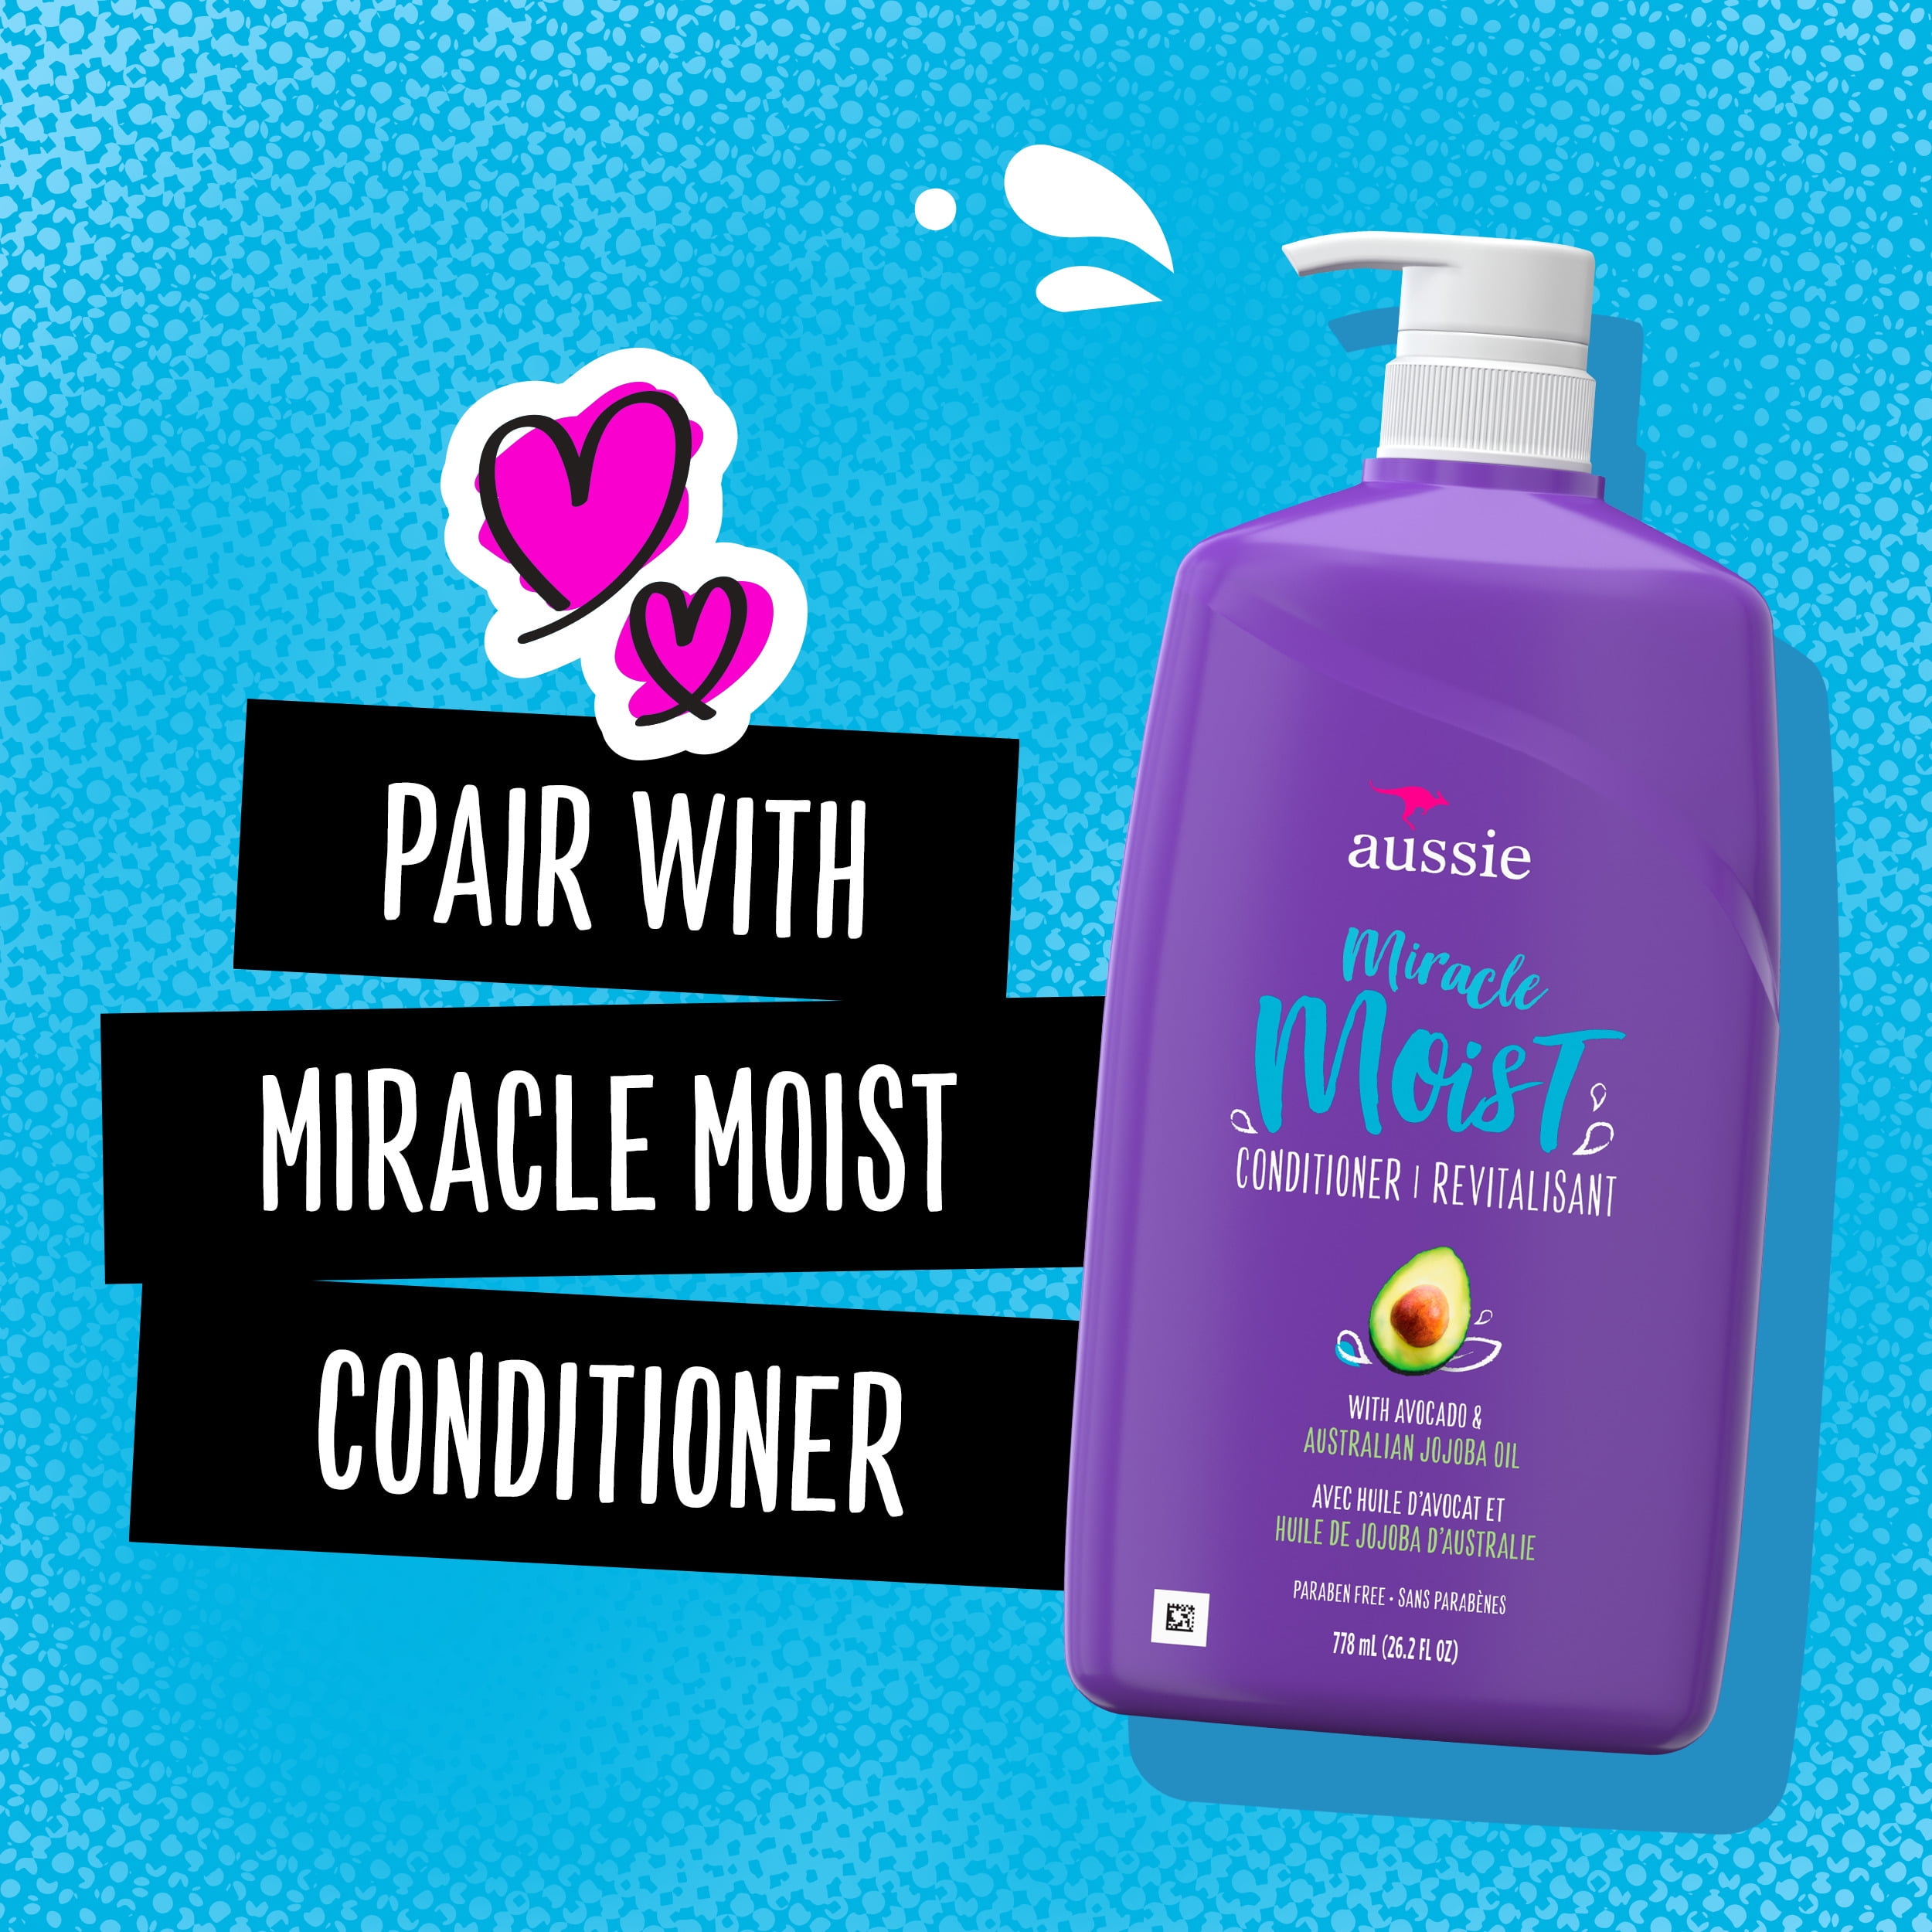 Aussie Miracle Moist Shampoo with Paraben Free, 26.2 fl -